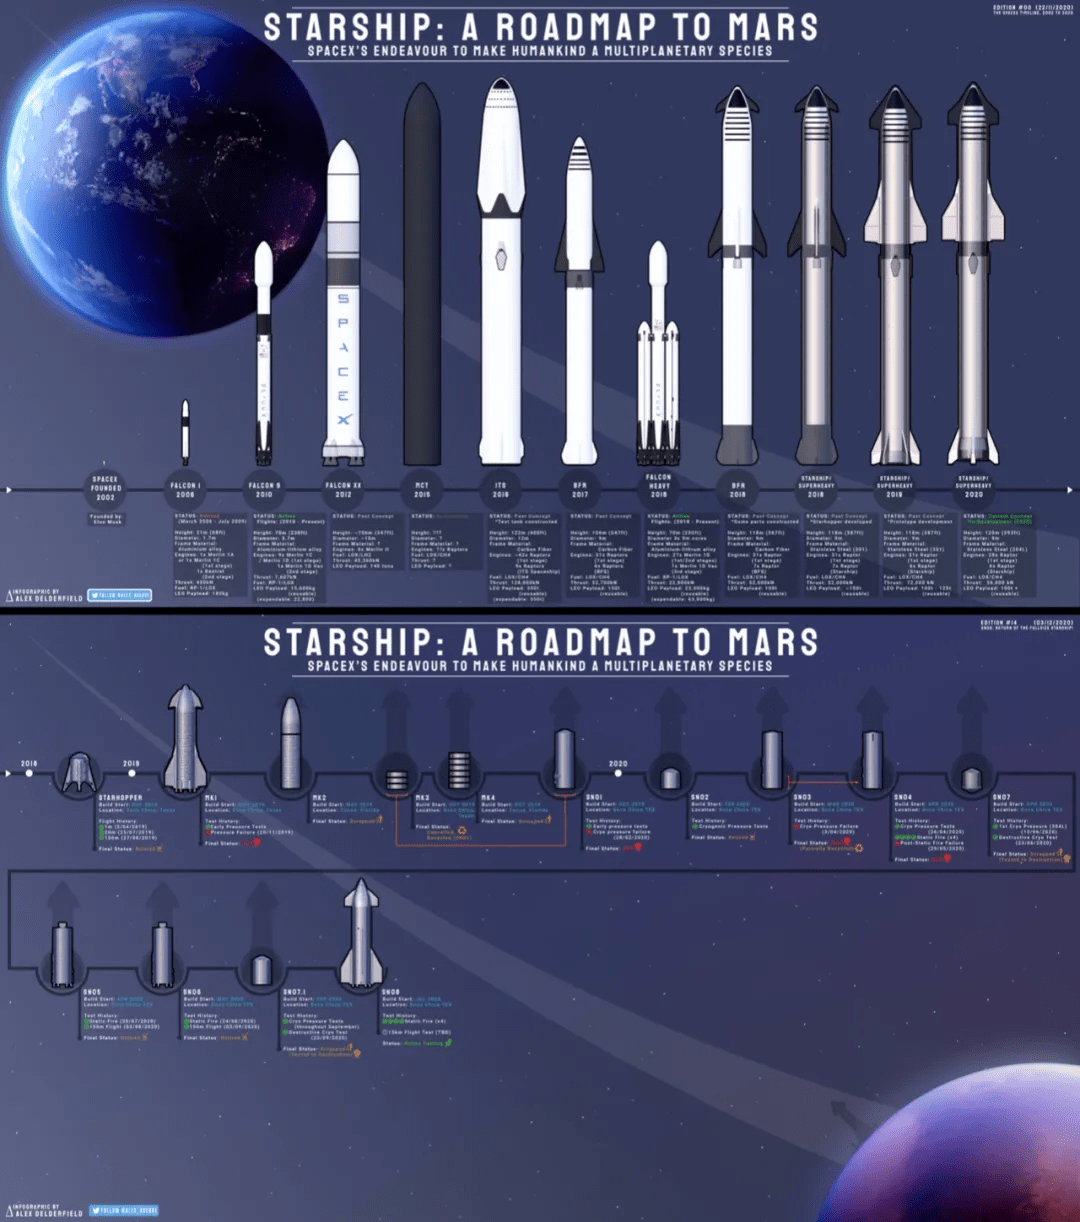 一笔spacex箭船开发变形记,就是一部星舰演化超简史,一目了然——